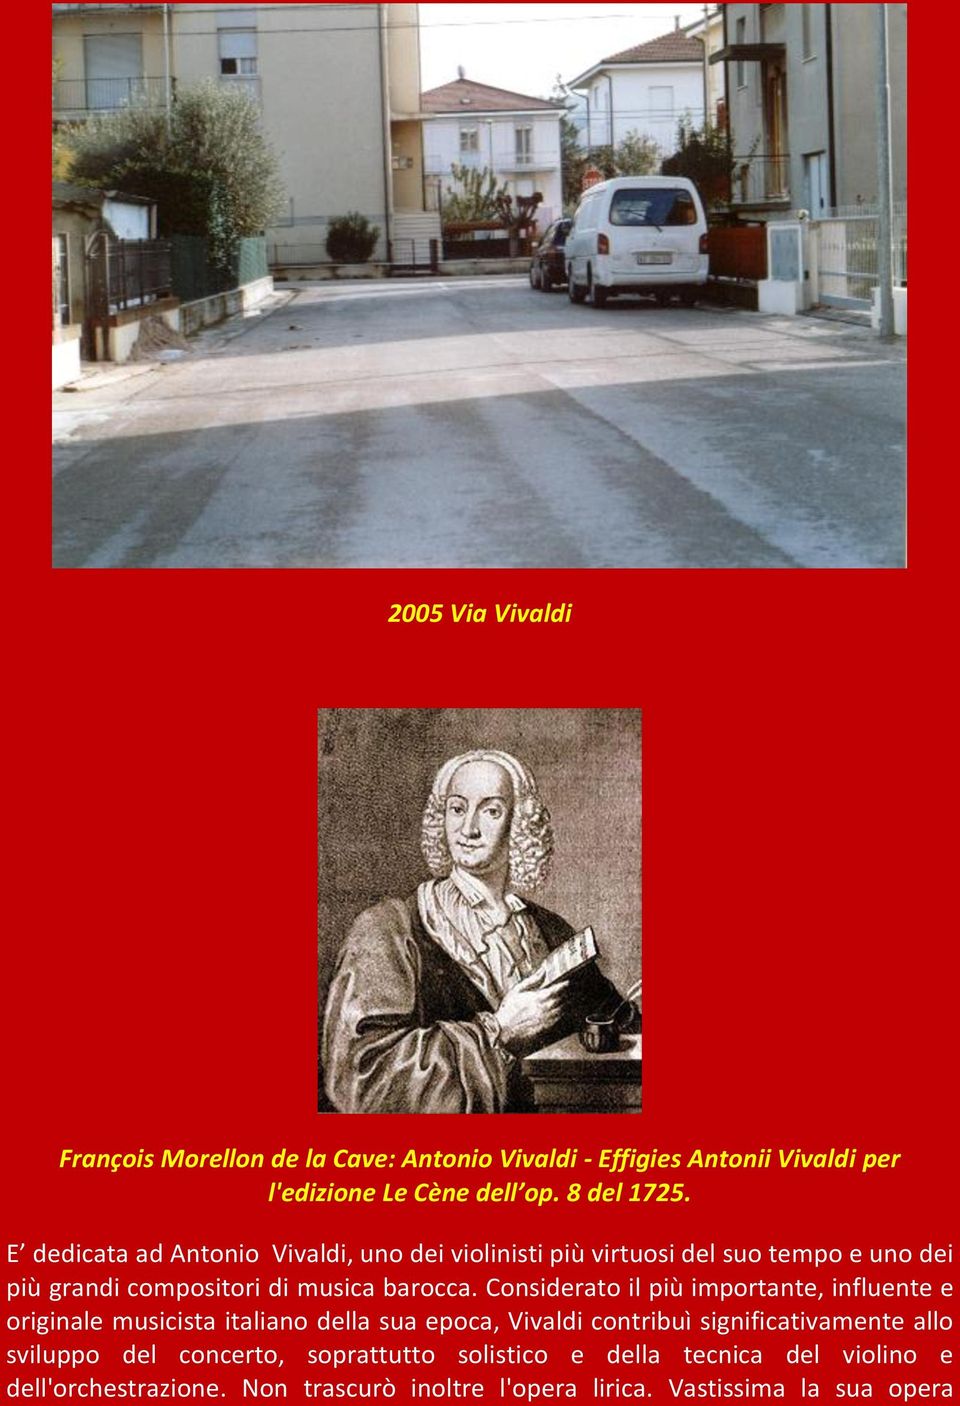 Considerato il più importante, influente e originale musicista italiano della sua epoca, Vivaldi contribuì significativamente allo